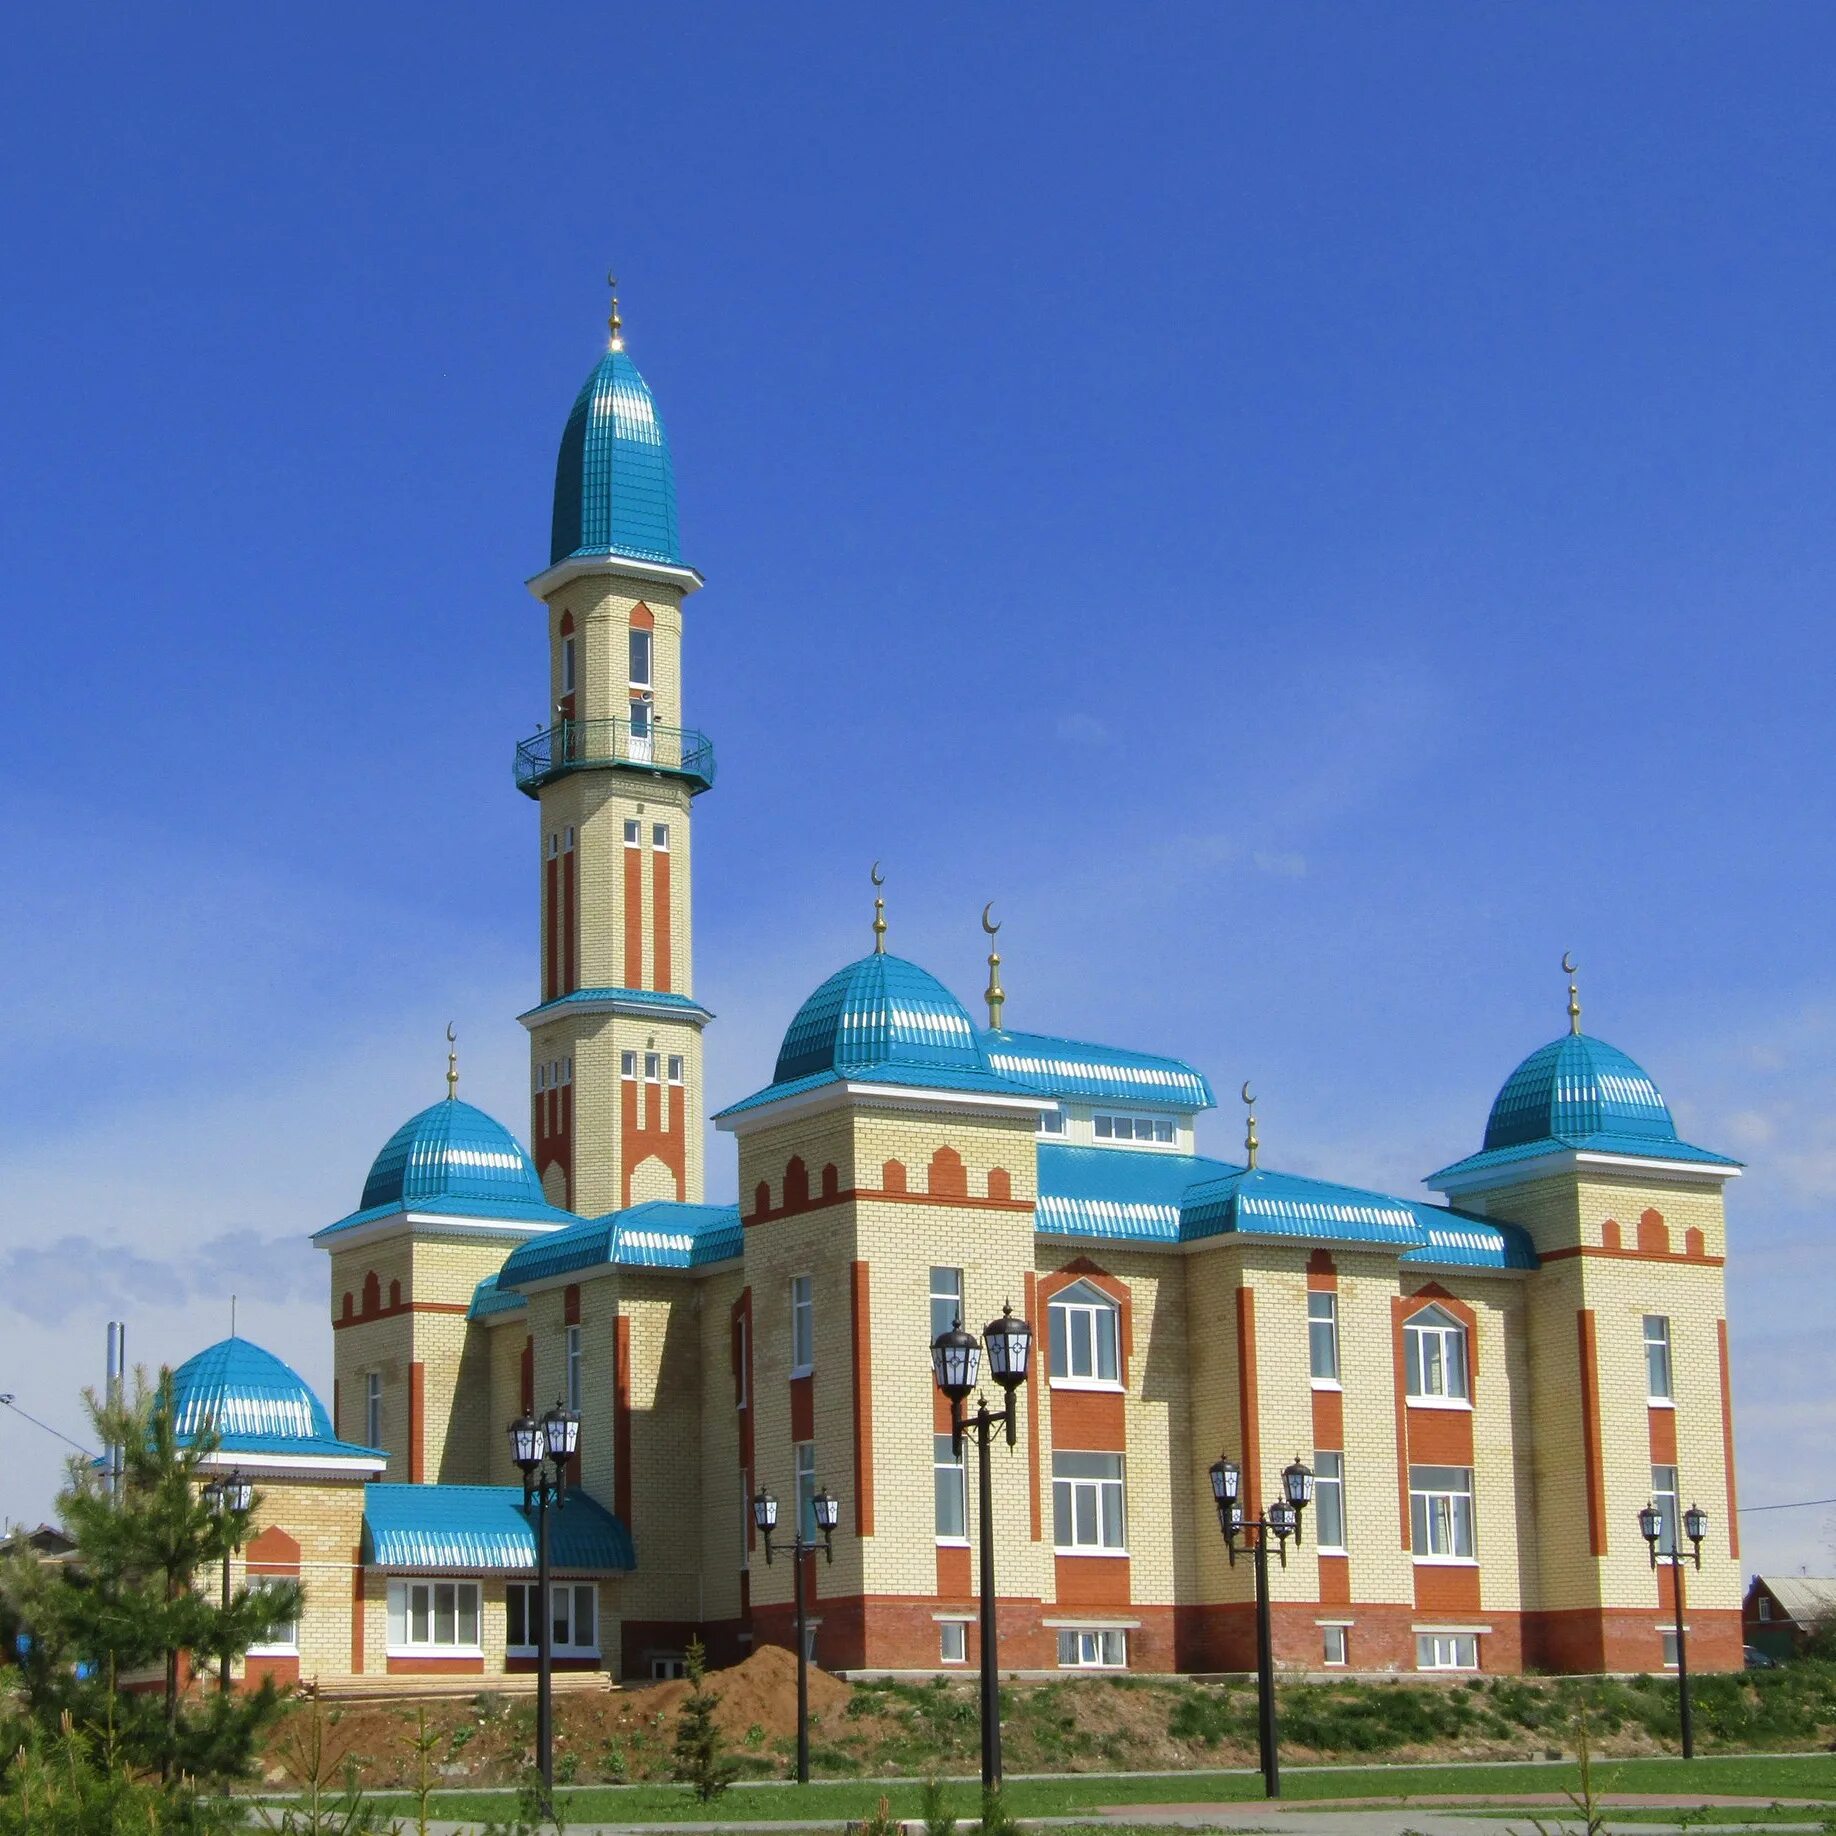 Мечеть Ильдус Арск. Арск мечеть Восточная. Арск город в Татарстане. Мечеть в Арске Восточка.